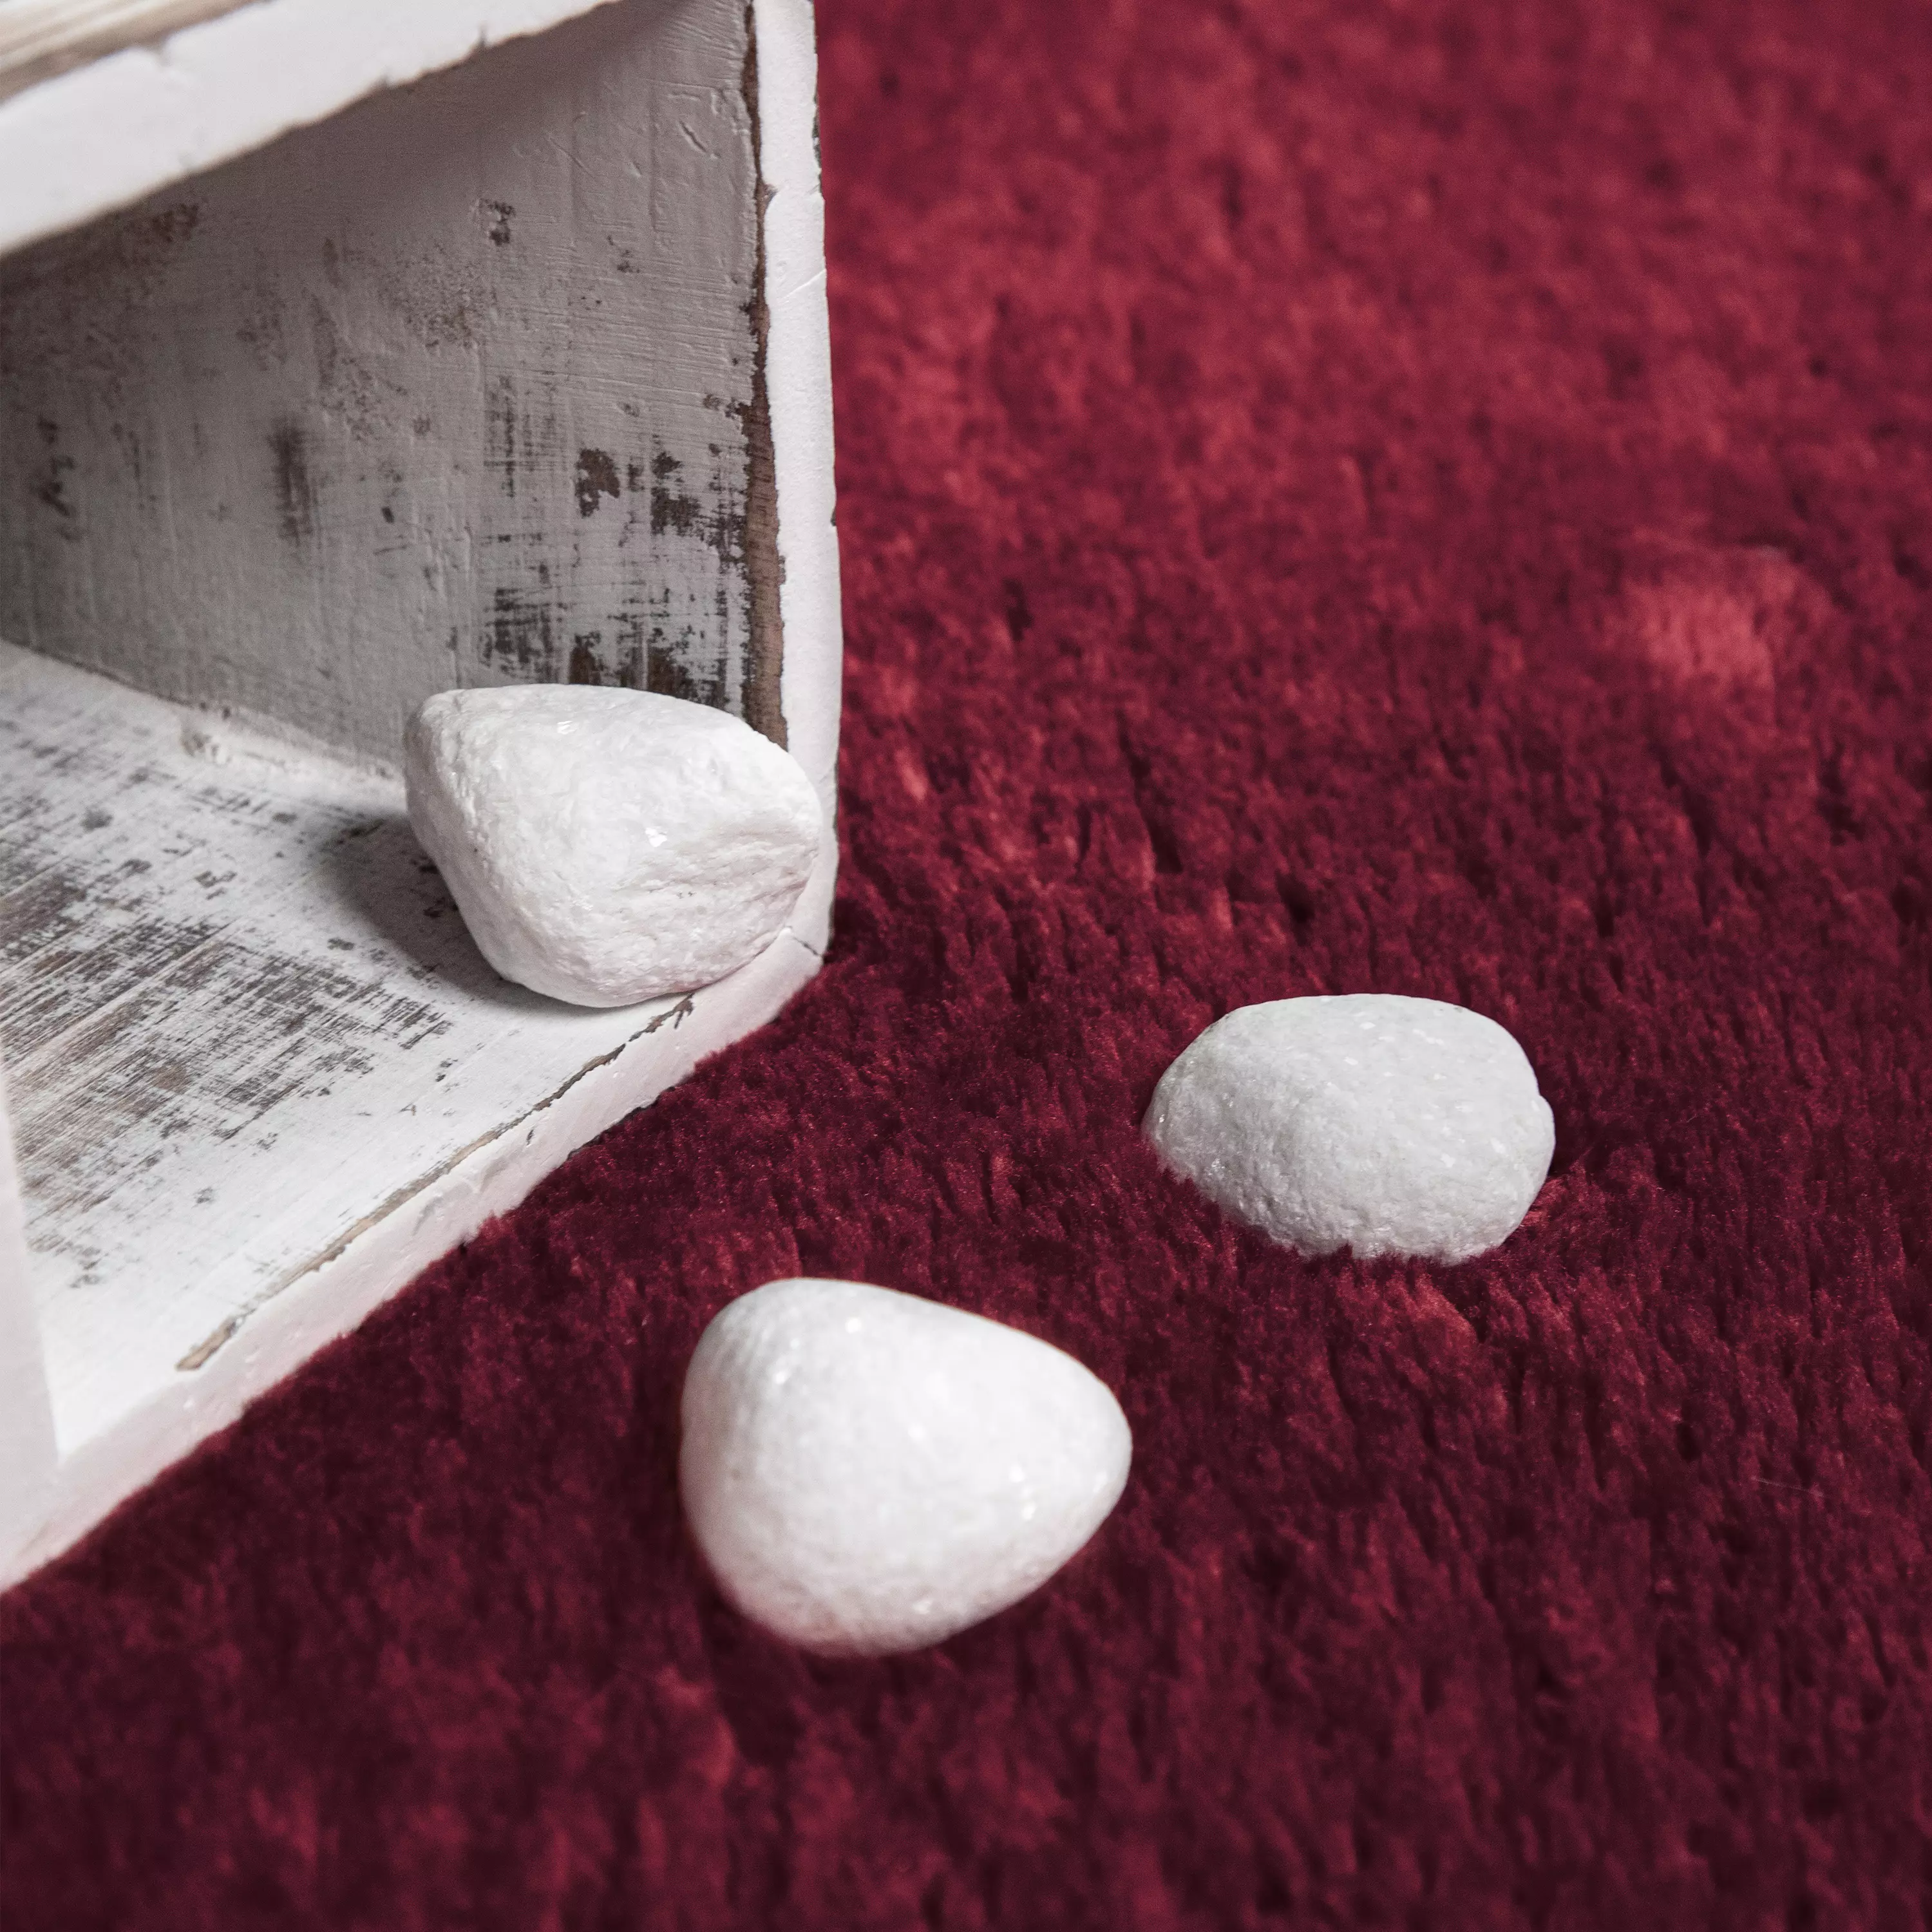 Kurzflor Teppiche | Der Allrounder für jedes Zuhause